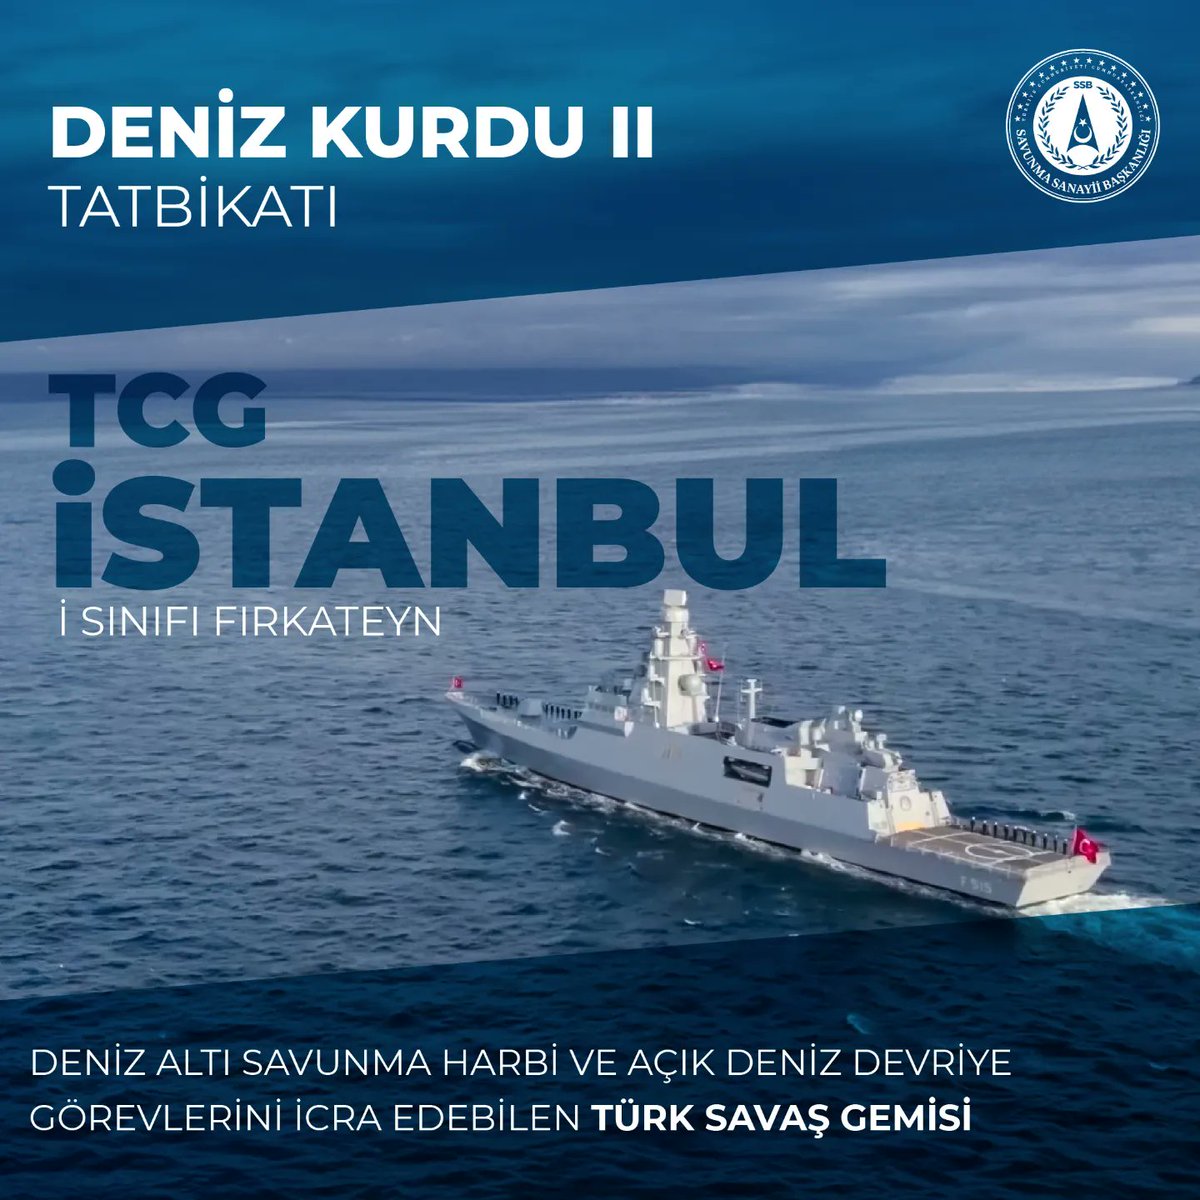 Güçlü sistemler, güçlü ordu, güçlü Türkiye!🇹🇷 #Milli🇹🇷teknolojilerimiz #Denizkurdu-II/24 Tatbikatı’nda! @STMDefence tarafından geliştirilen ilk Türk fırkateyni olma özelliğini taşıyan, üzerinde taşıdığı silah ve elektronik sistemlerinde de büyük oranda yerli üretim sistemleri